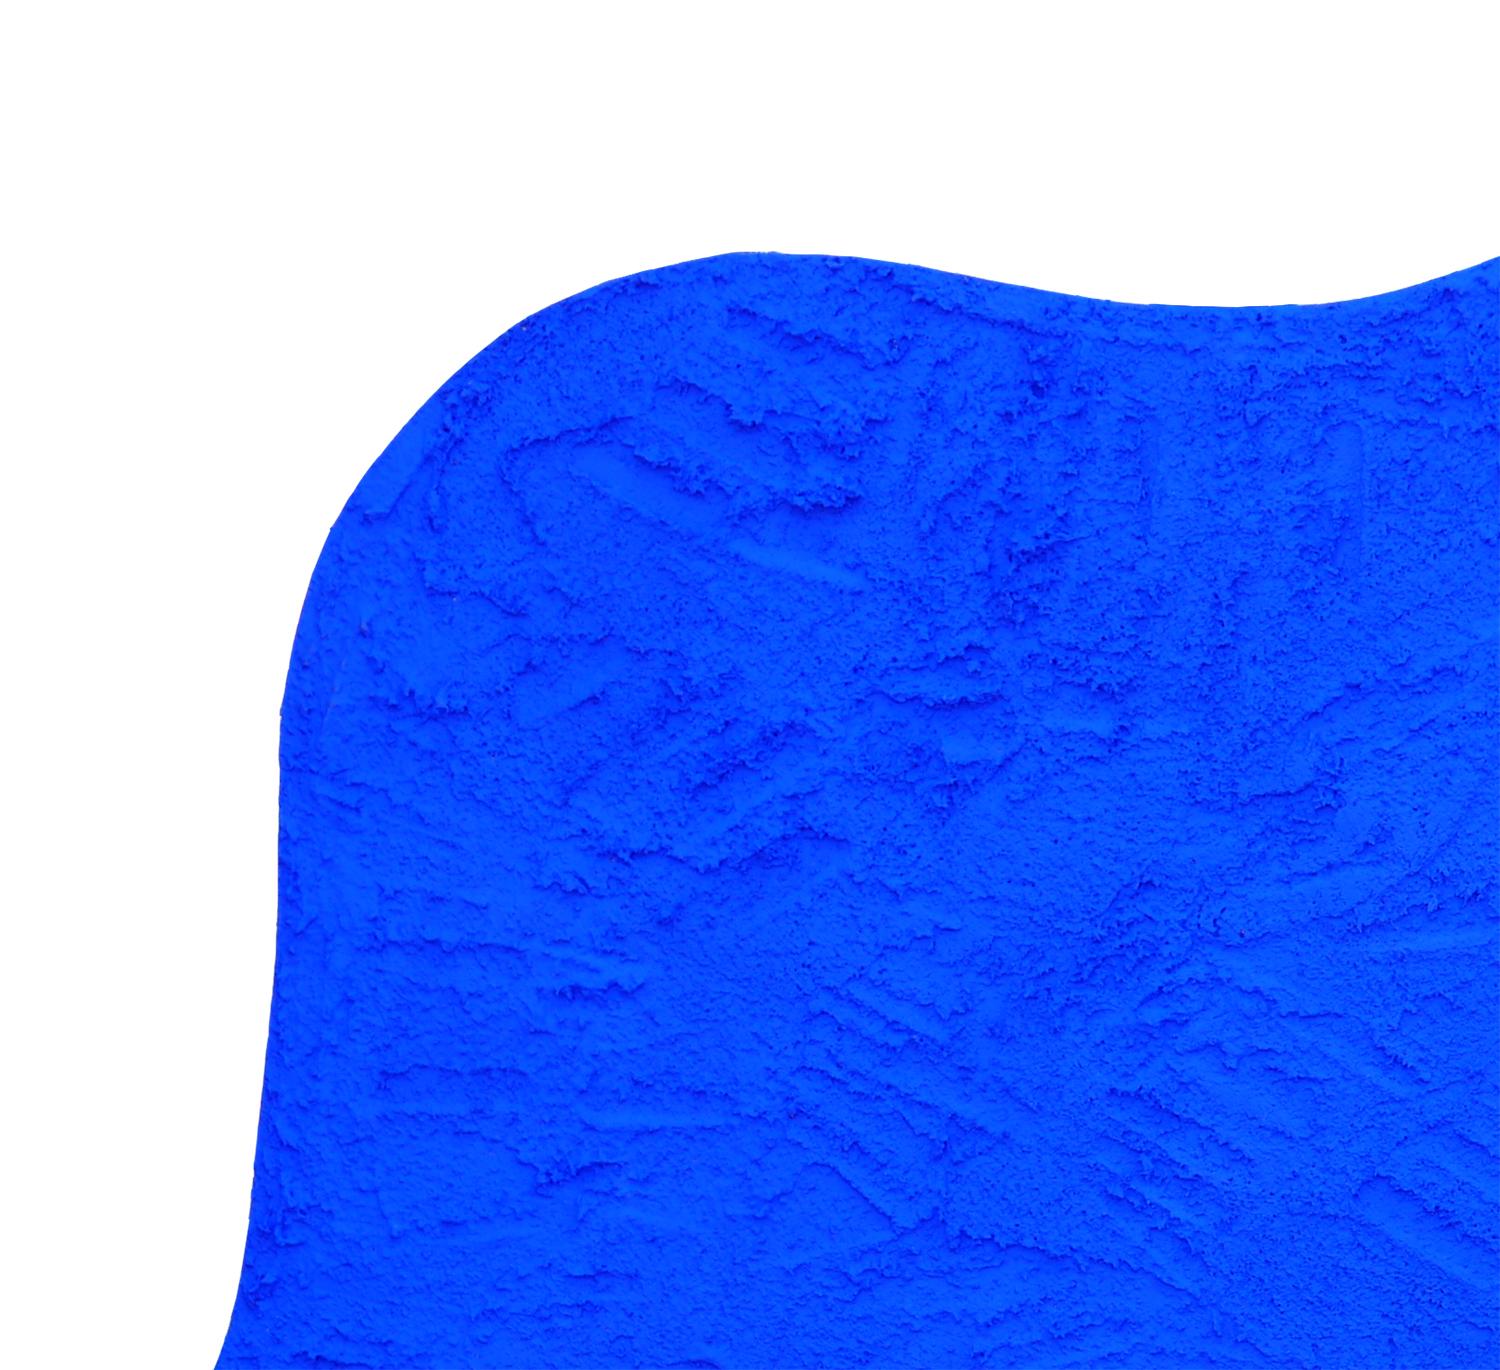 Abstrakte, strukturierte biomorphe Form, gemalt mit leuchtend blauem Pigment vom zeitgenössischen Künstler Matthew Reeves aus Houston, TX. Das Werk ist so konzipiert, dass es von der Wand weghängt und einen Schatten um das Werk wirft. Die dynamische